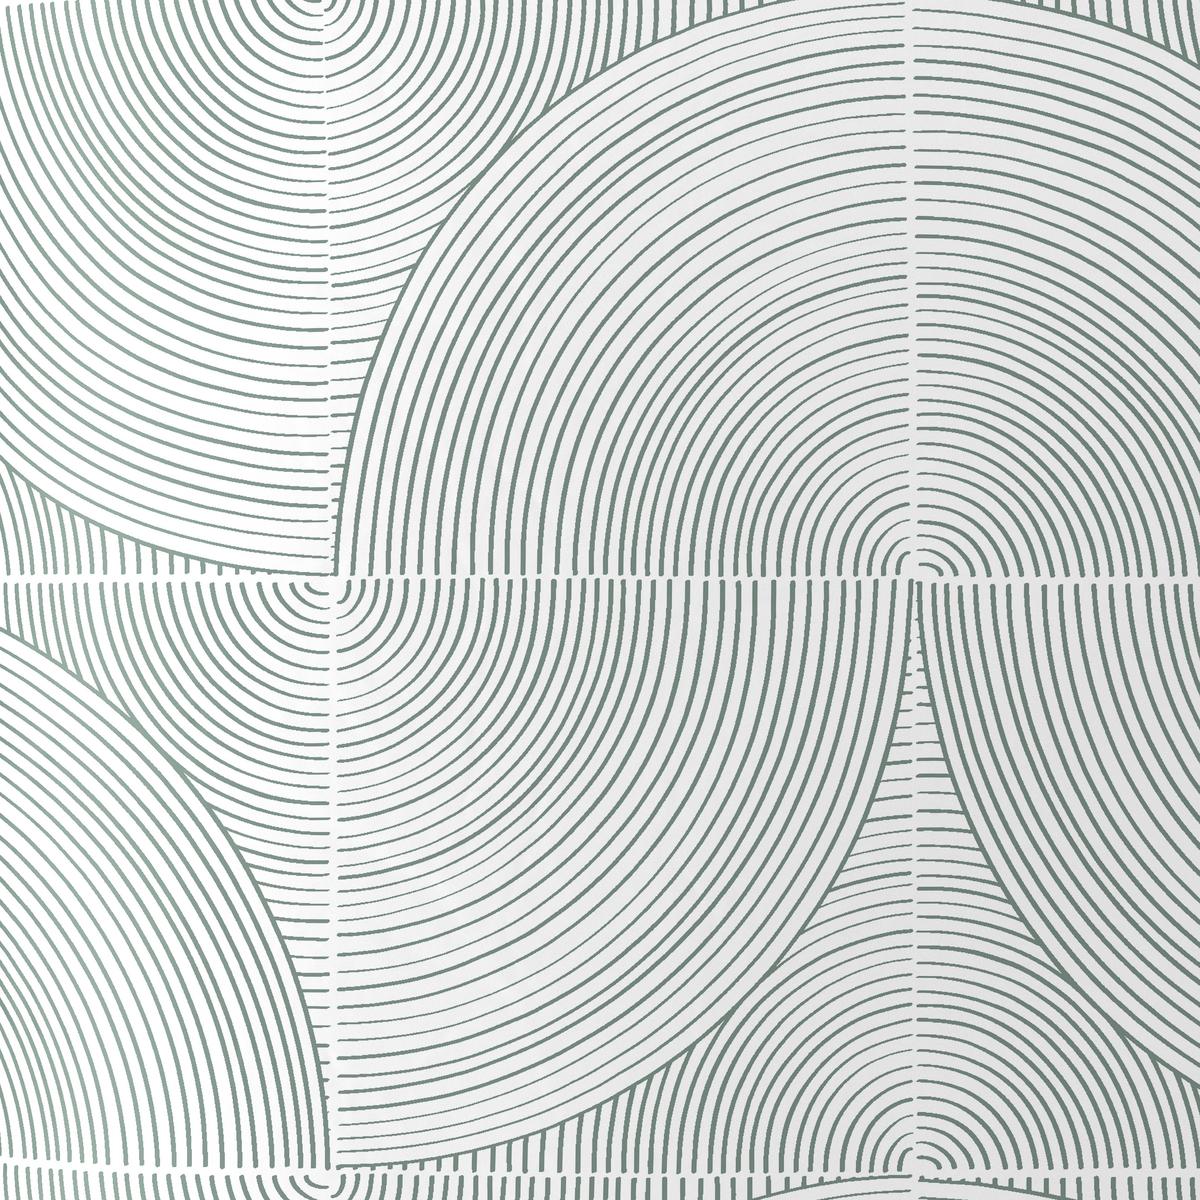 Povlečení Circles, 140/200cm, Šedá - šedá, Moderní, textil (140/200cm) - Modern Living